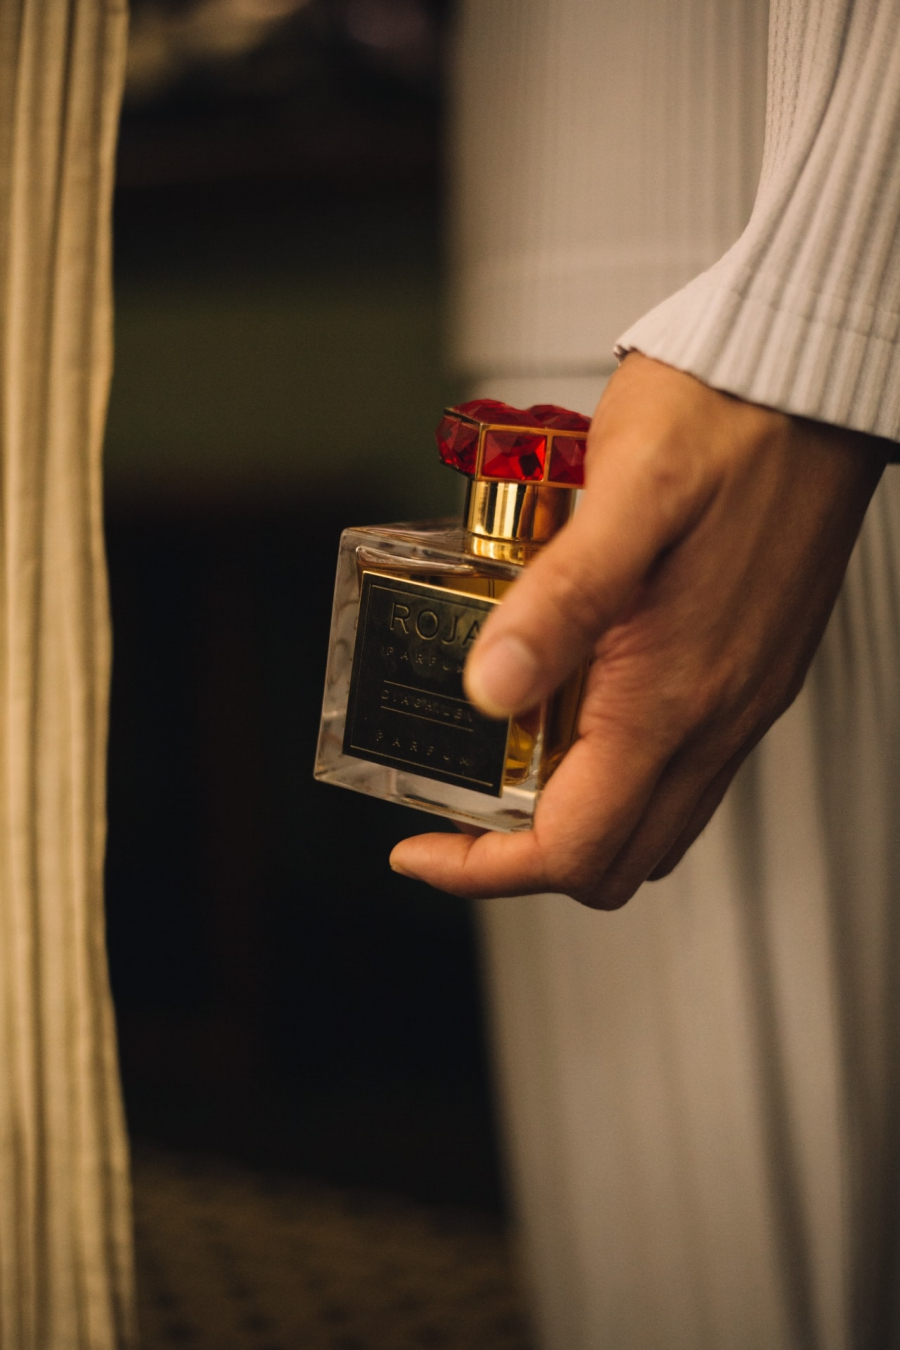 Diaghilev Roja Parfums (ảnh: ChQcQ)